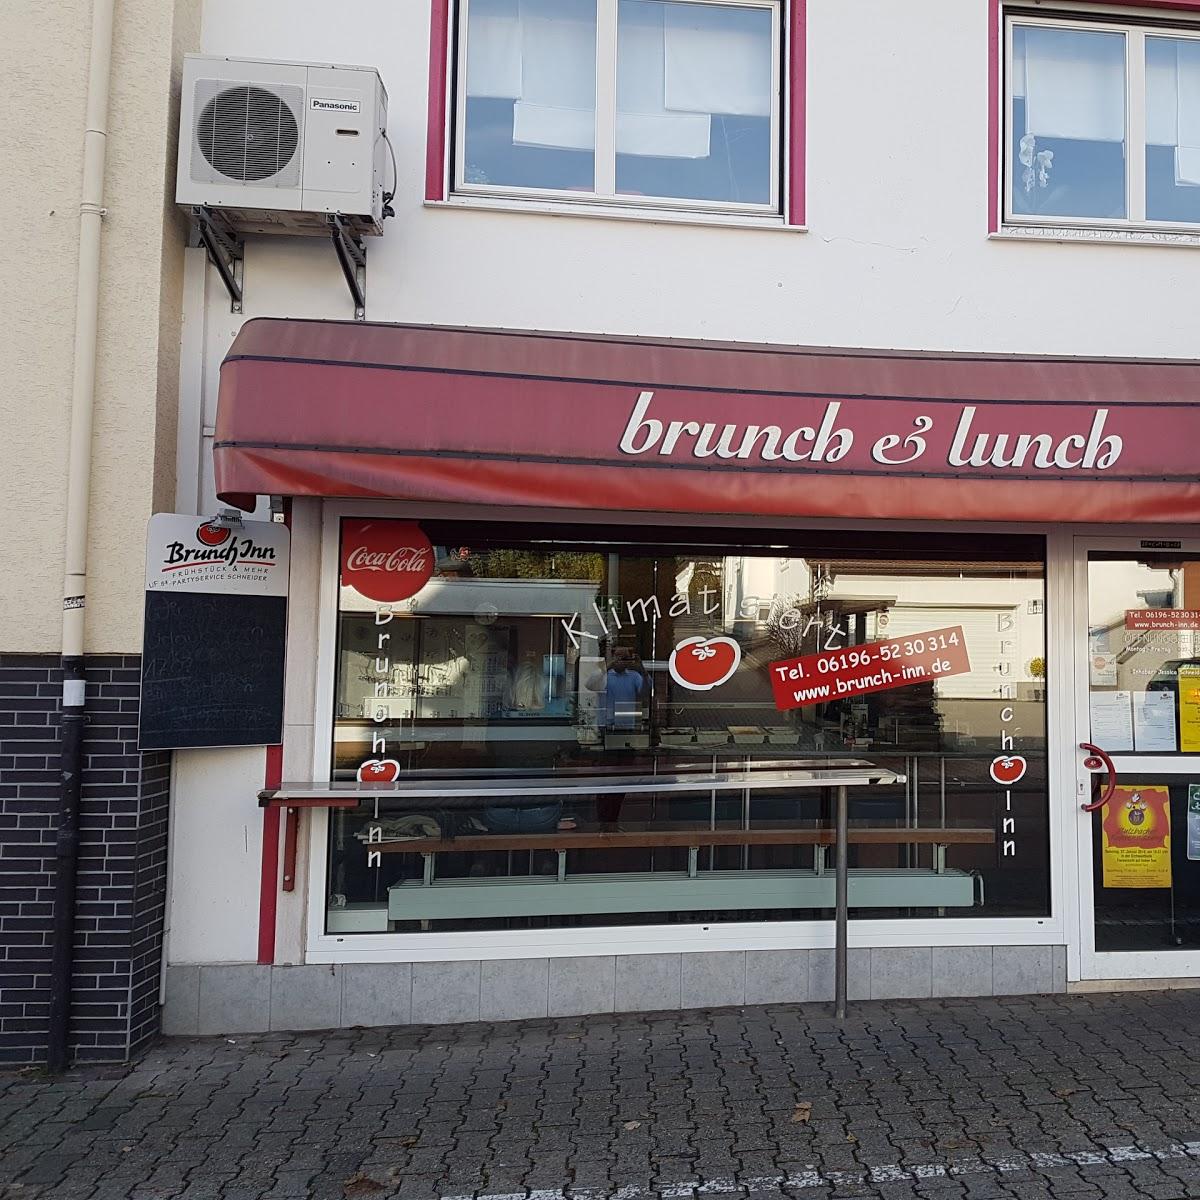 Restaurant "Brunch Inn" in Sulzbach (Taunus)